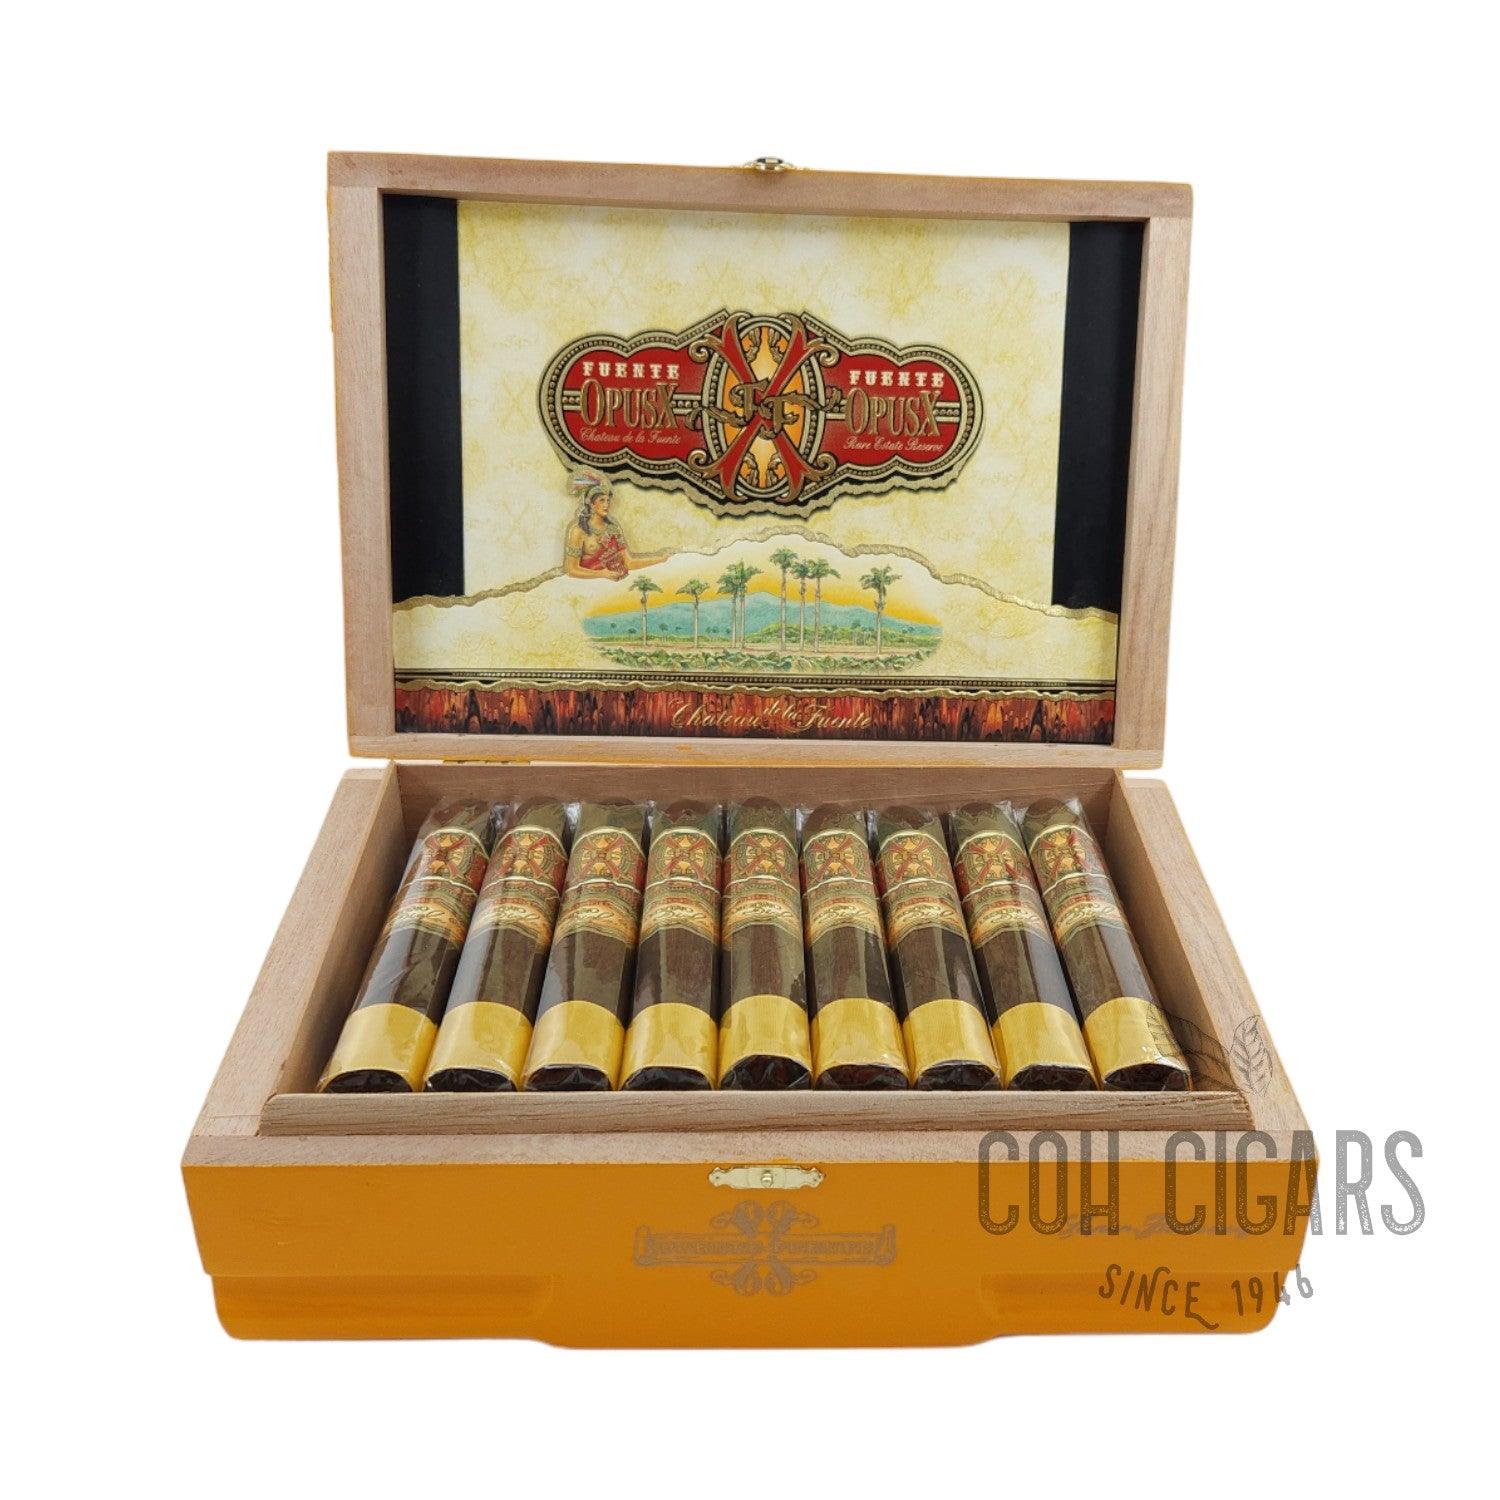 Arturo Fuente Cigar | Fuente Fuente Opusx Oro Oscuro Super Belicoso | Box 29 - HK CohCigars